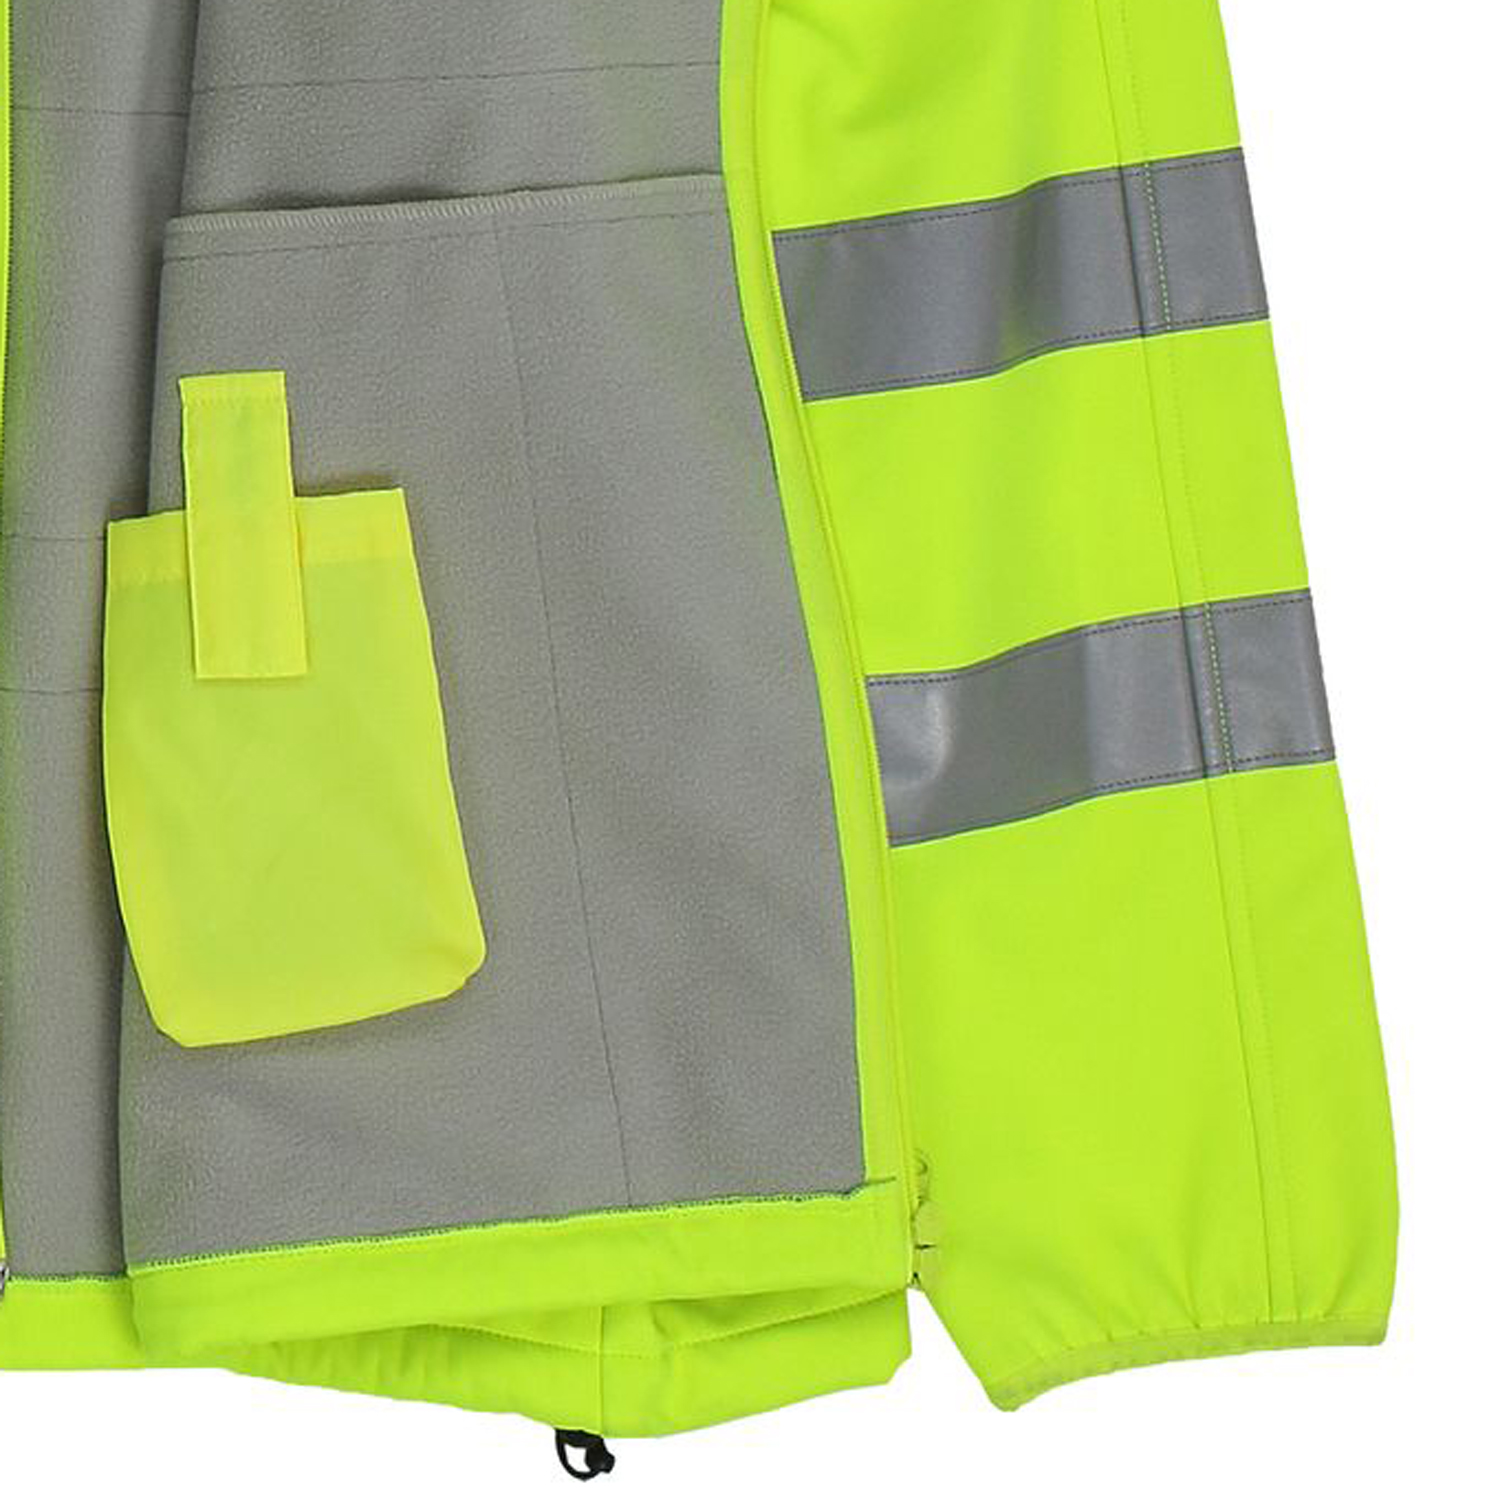 Veste softshell de travail et de visibilité by marc&mark grandes tailles jusqu'au 10XL/ jaune fluo / manches amovibles